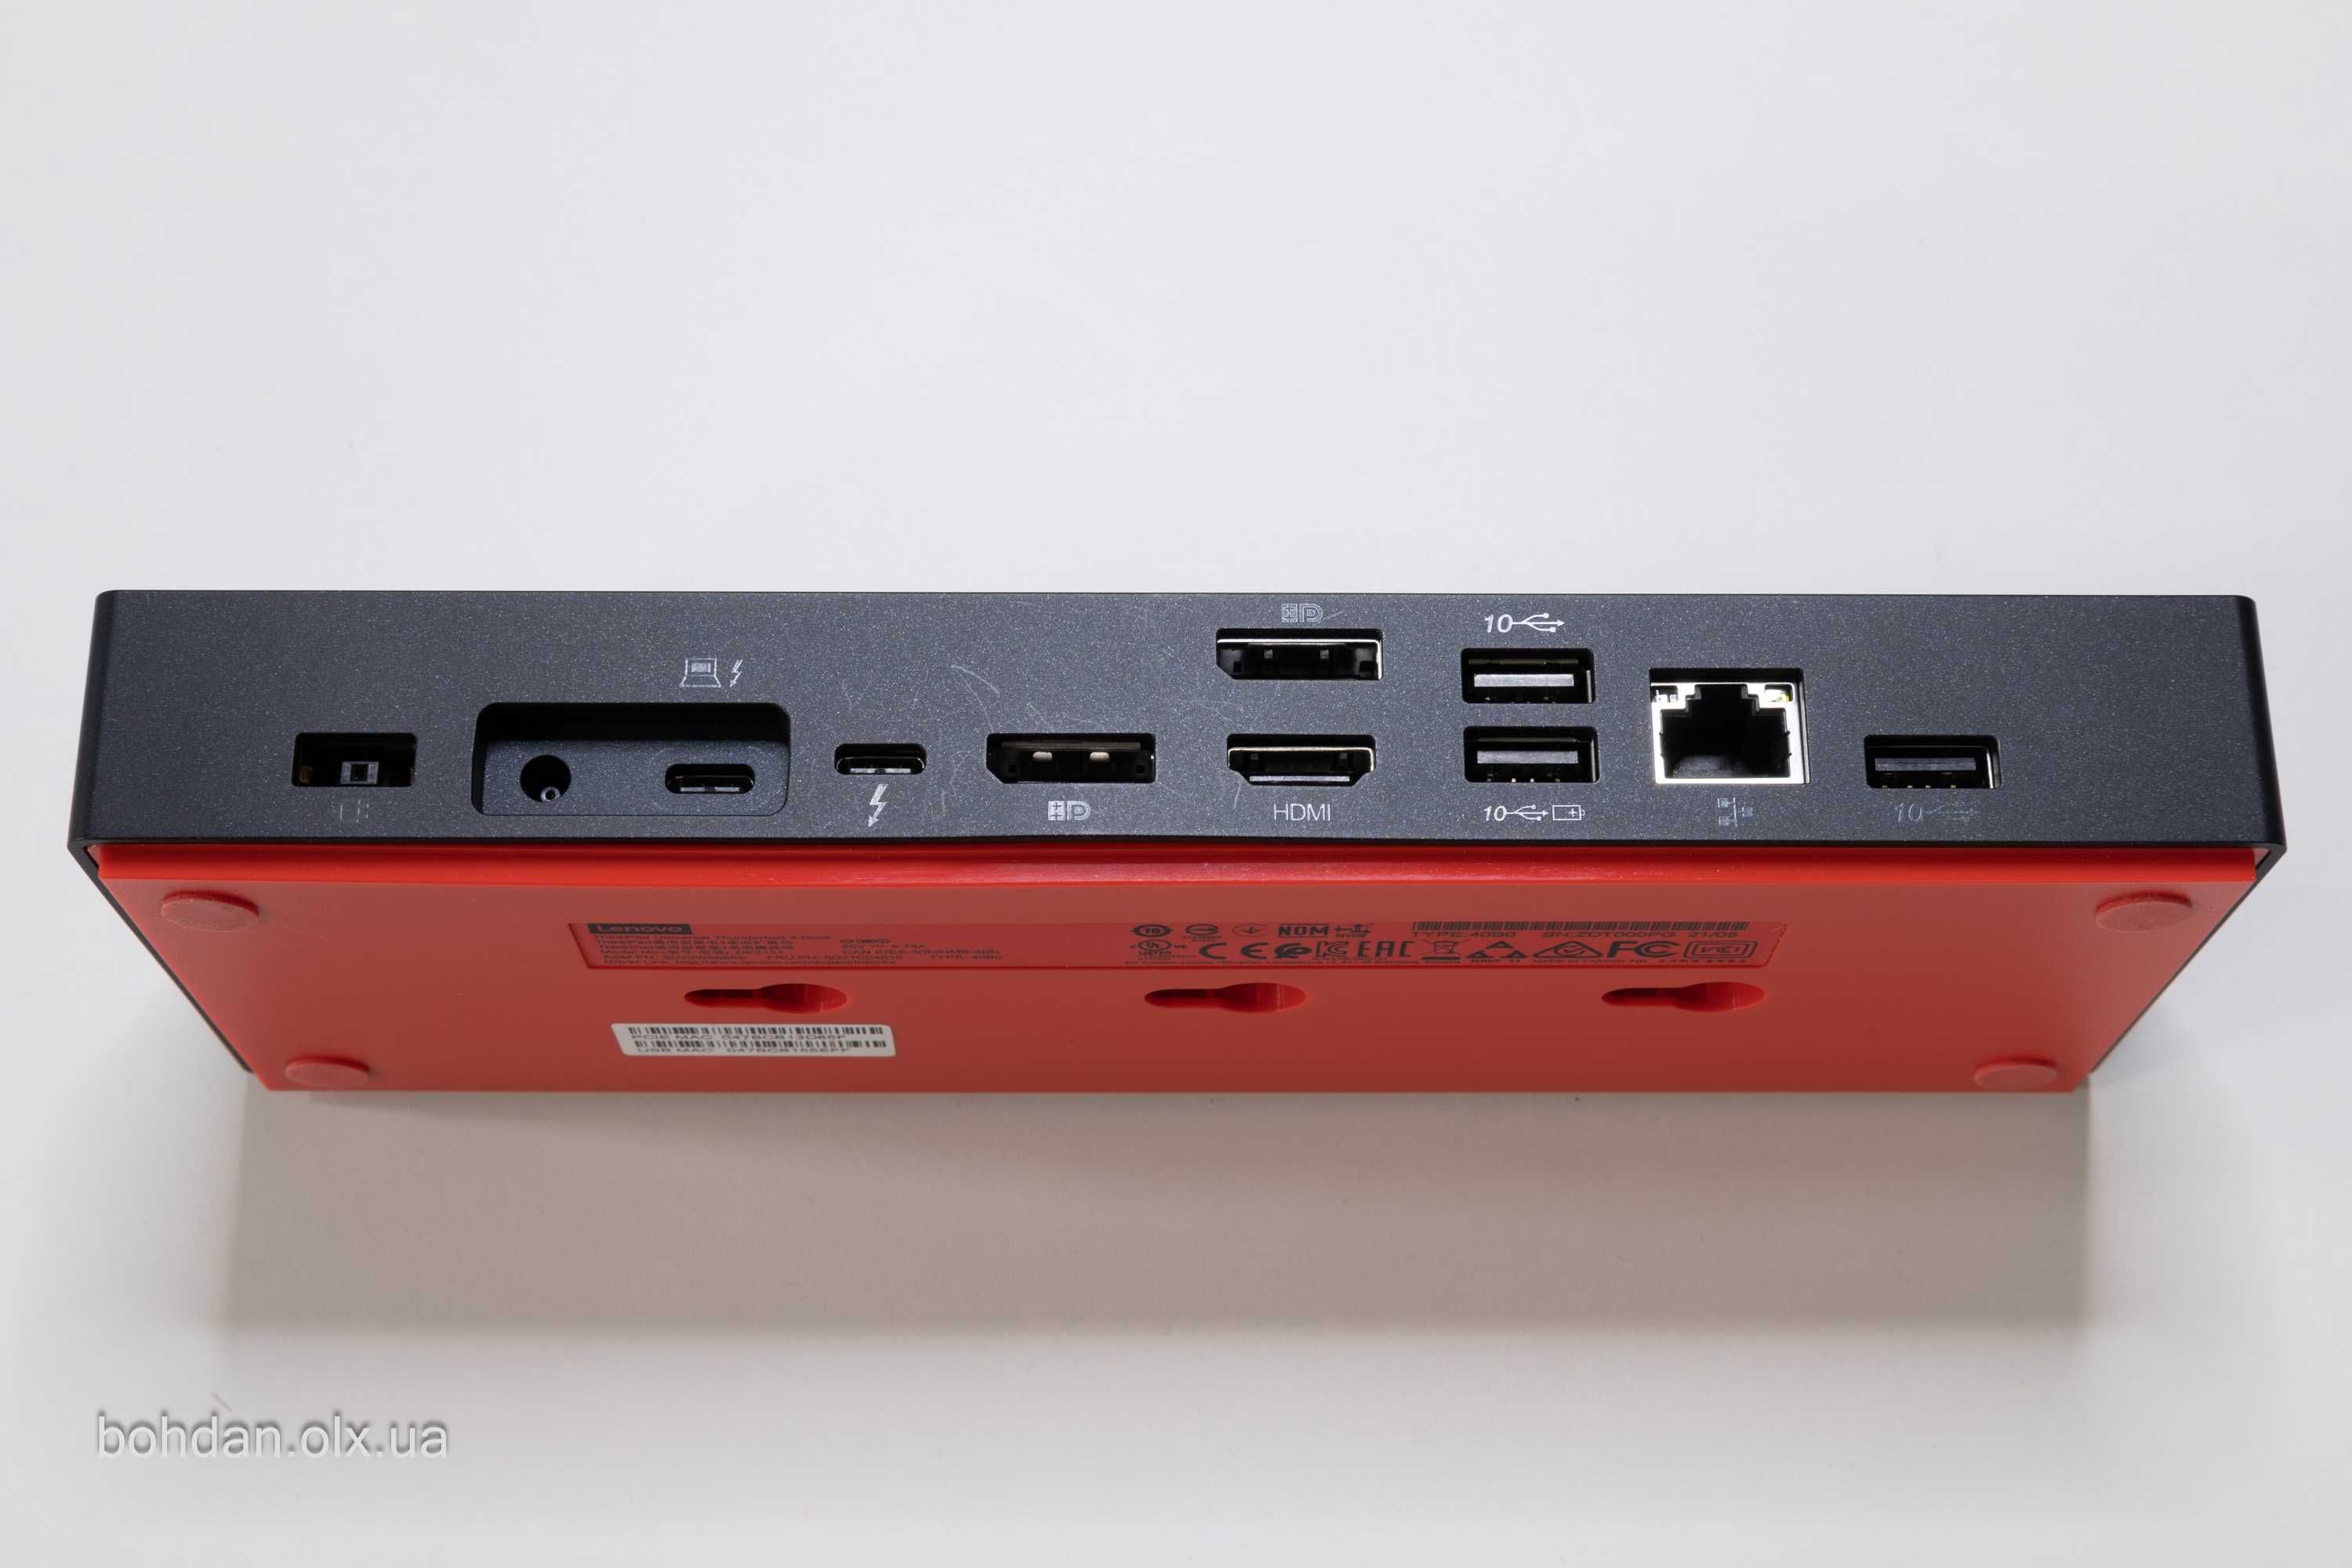 ThinkPad Universal Thunderbolt 4 Dock - US (40B00135US)